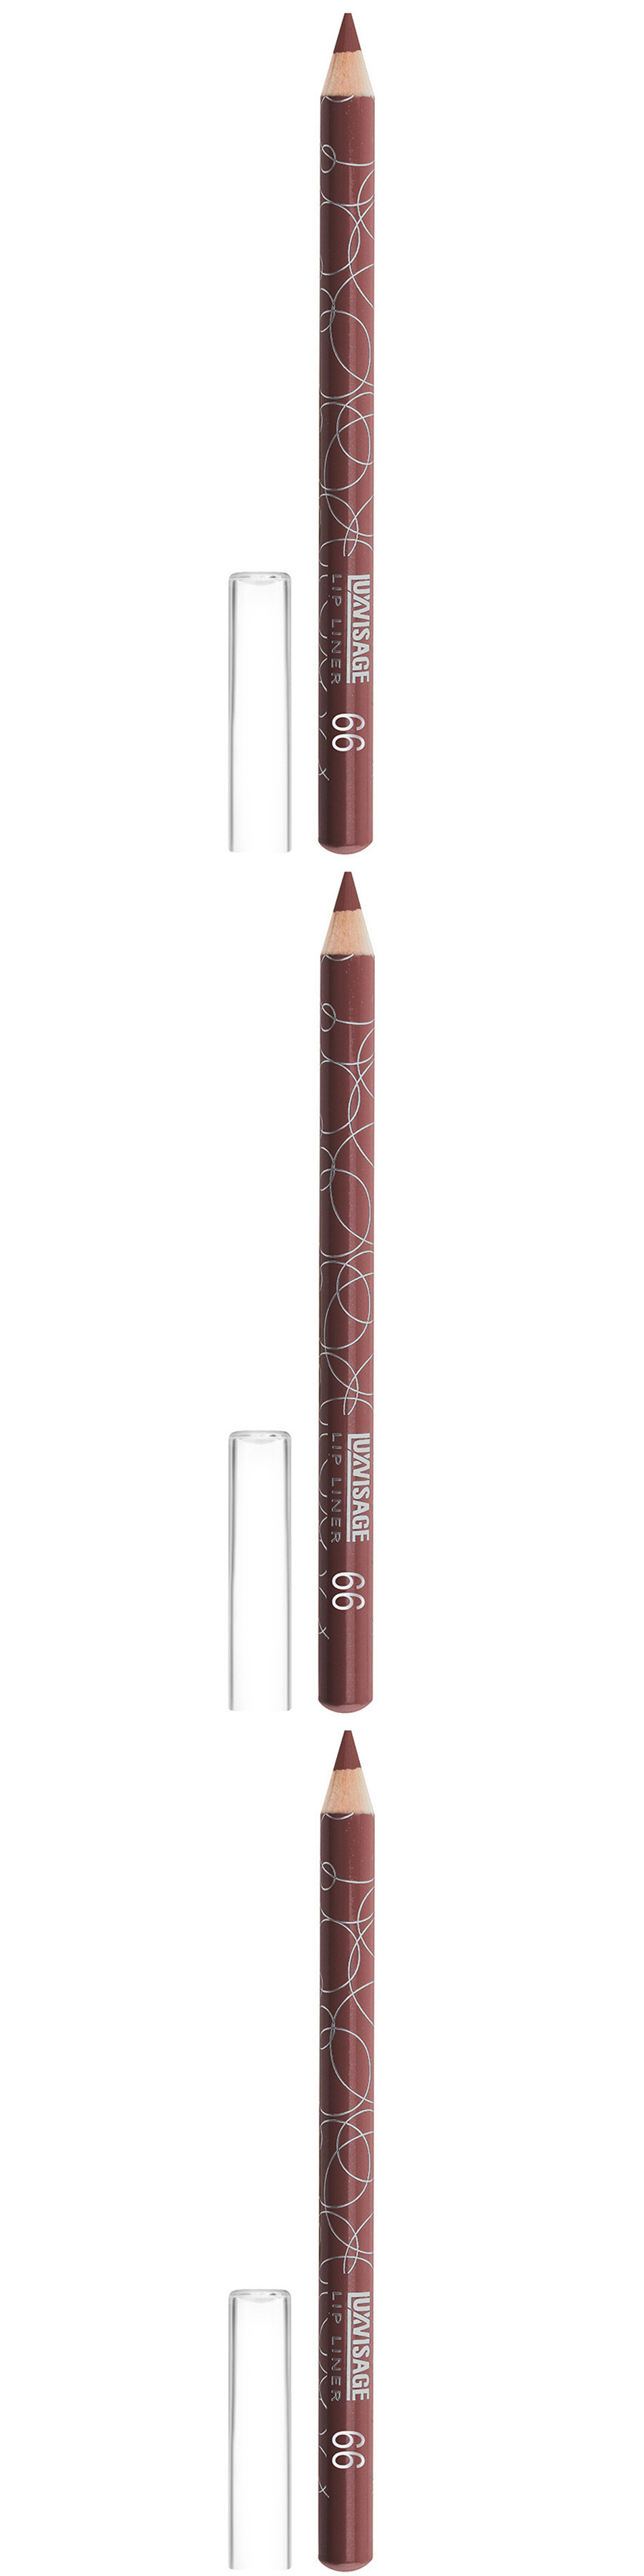 Карандаш для губ Luxvisage, тон 66, лилово-коричневый, 3 шт карандаш для глаз shinewell тёмно коричневый тон 2